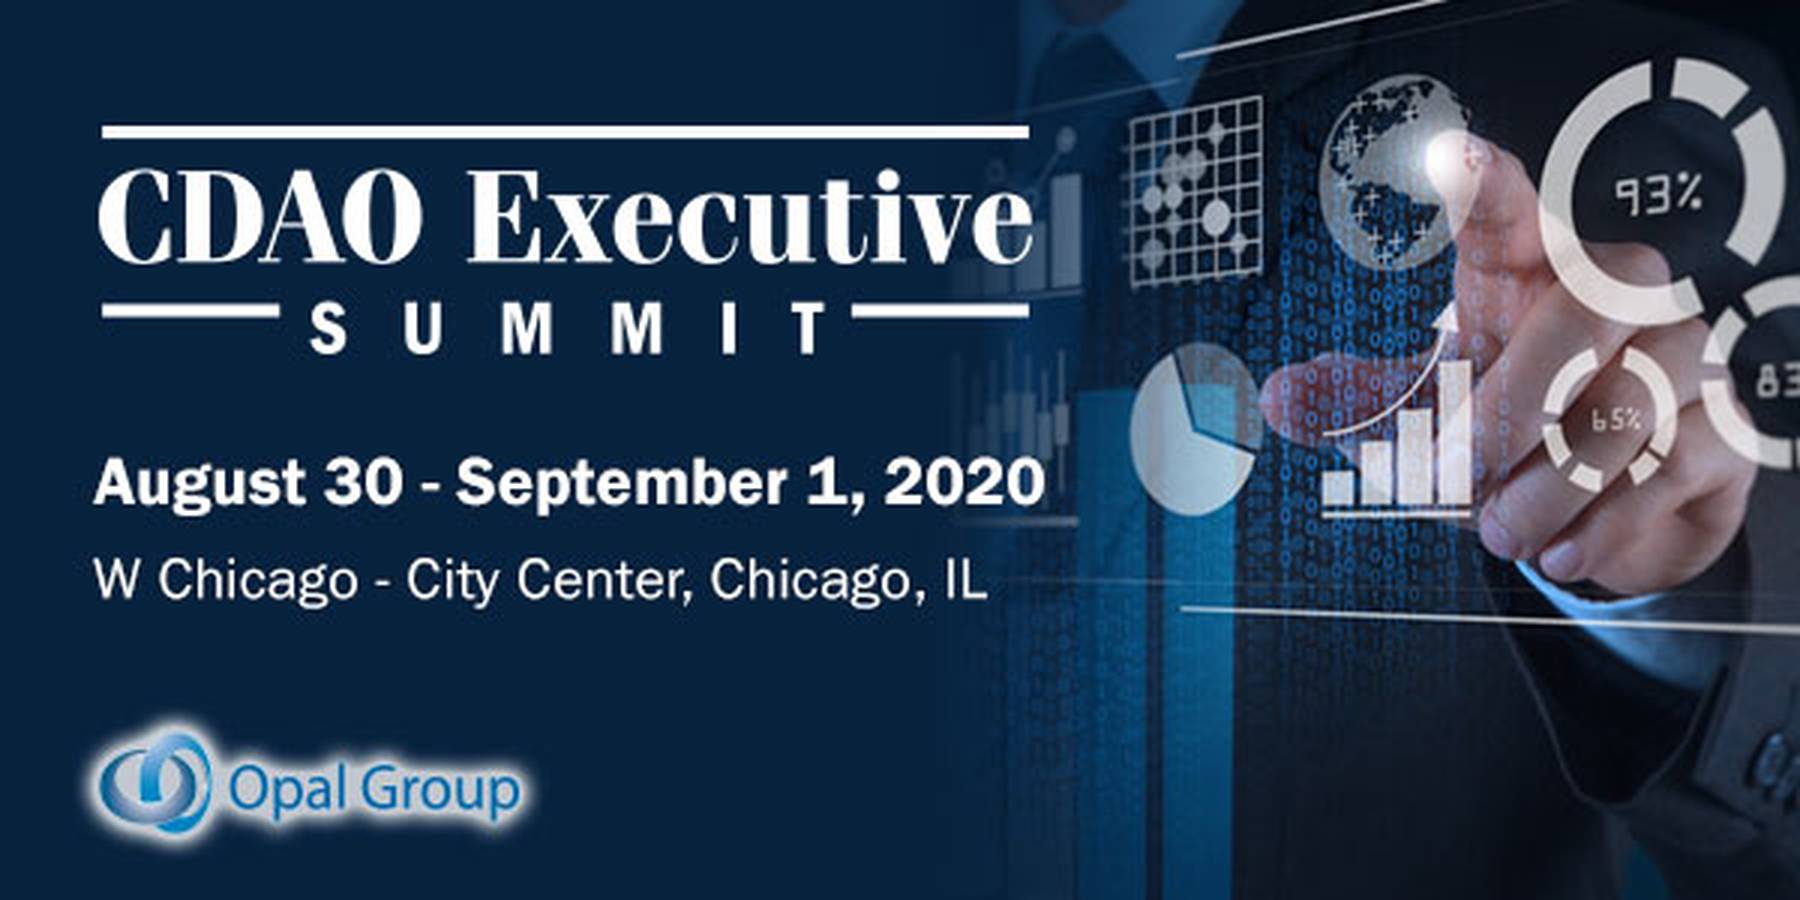 CDAO Executive Summit 2020 AI & ML Events